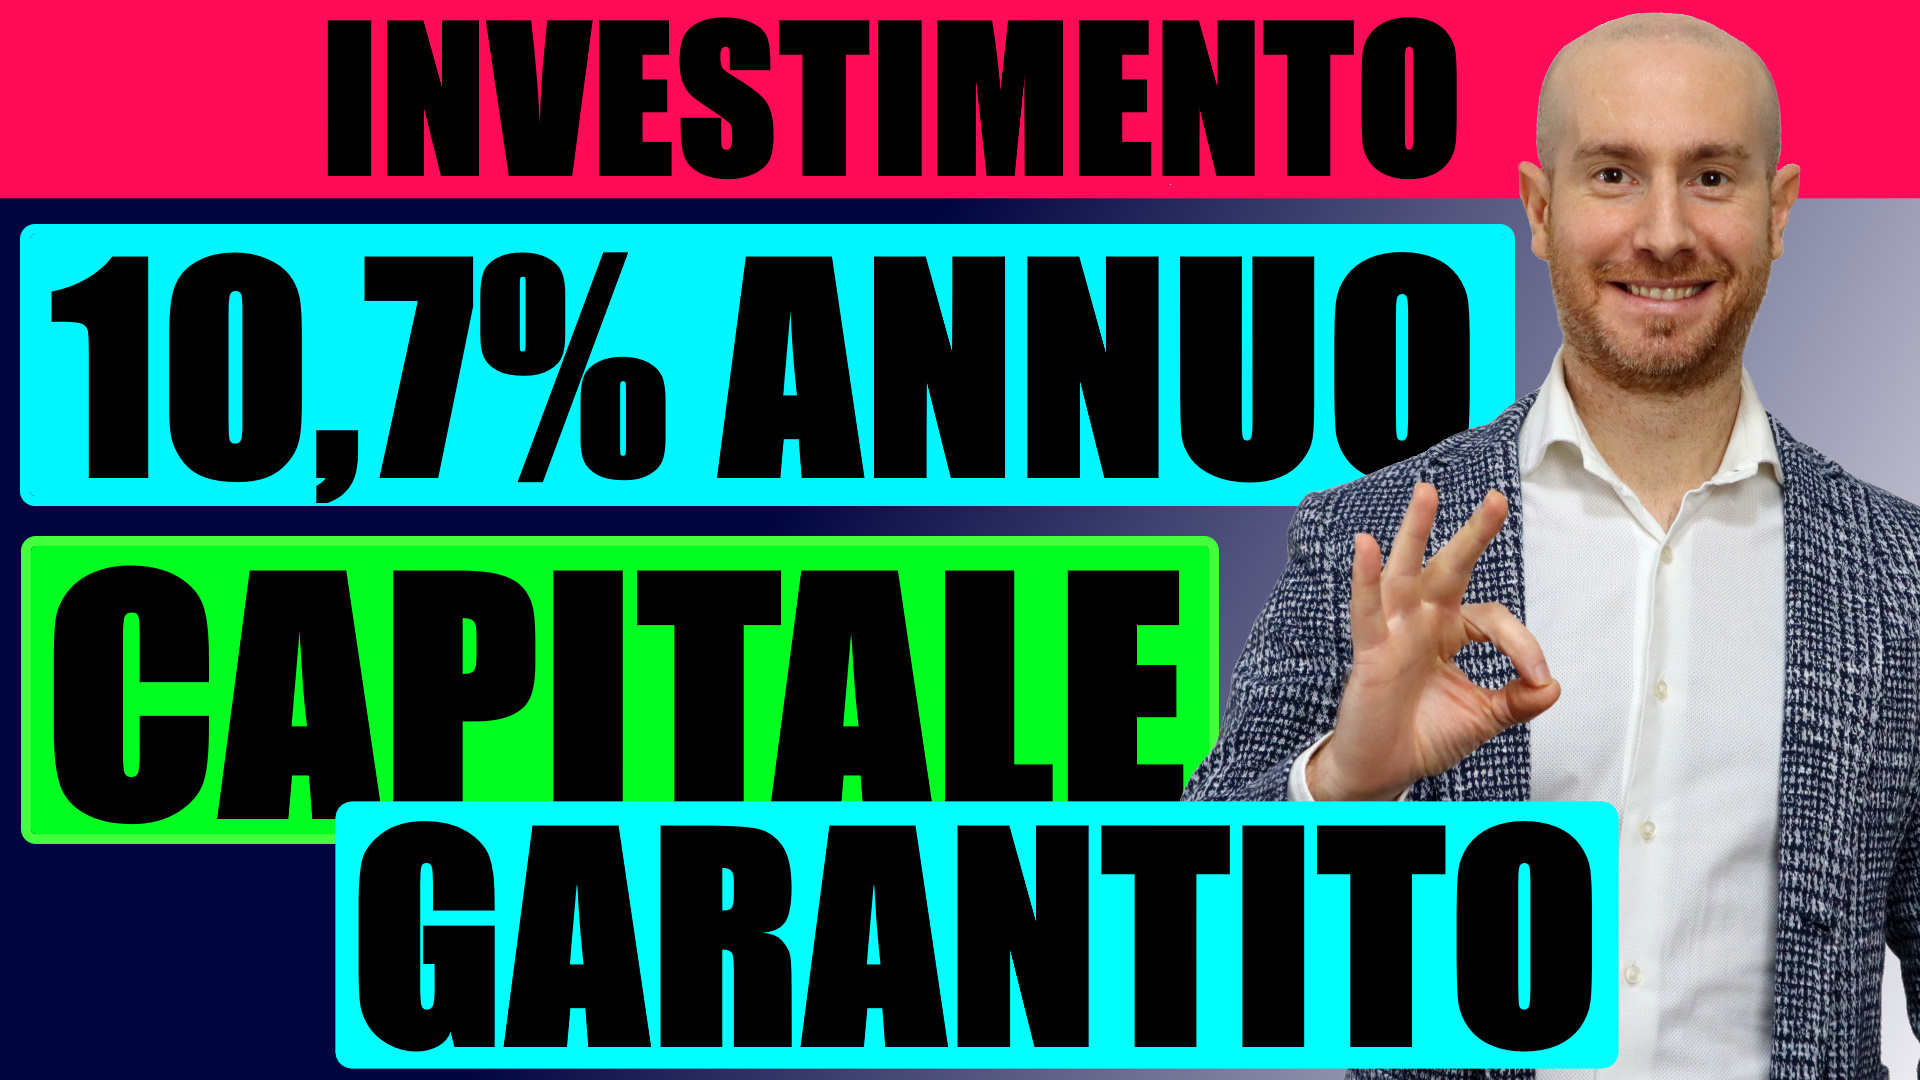 Investimento 10.7% Capitale garantito